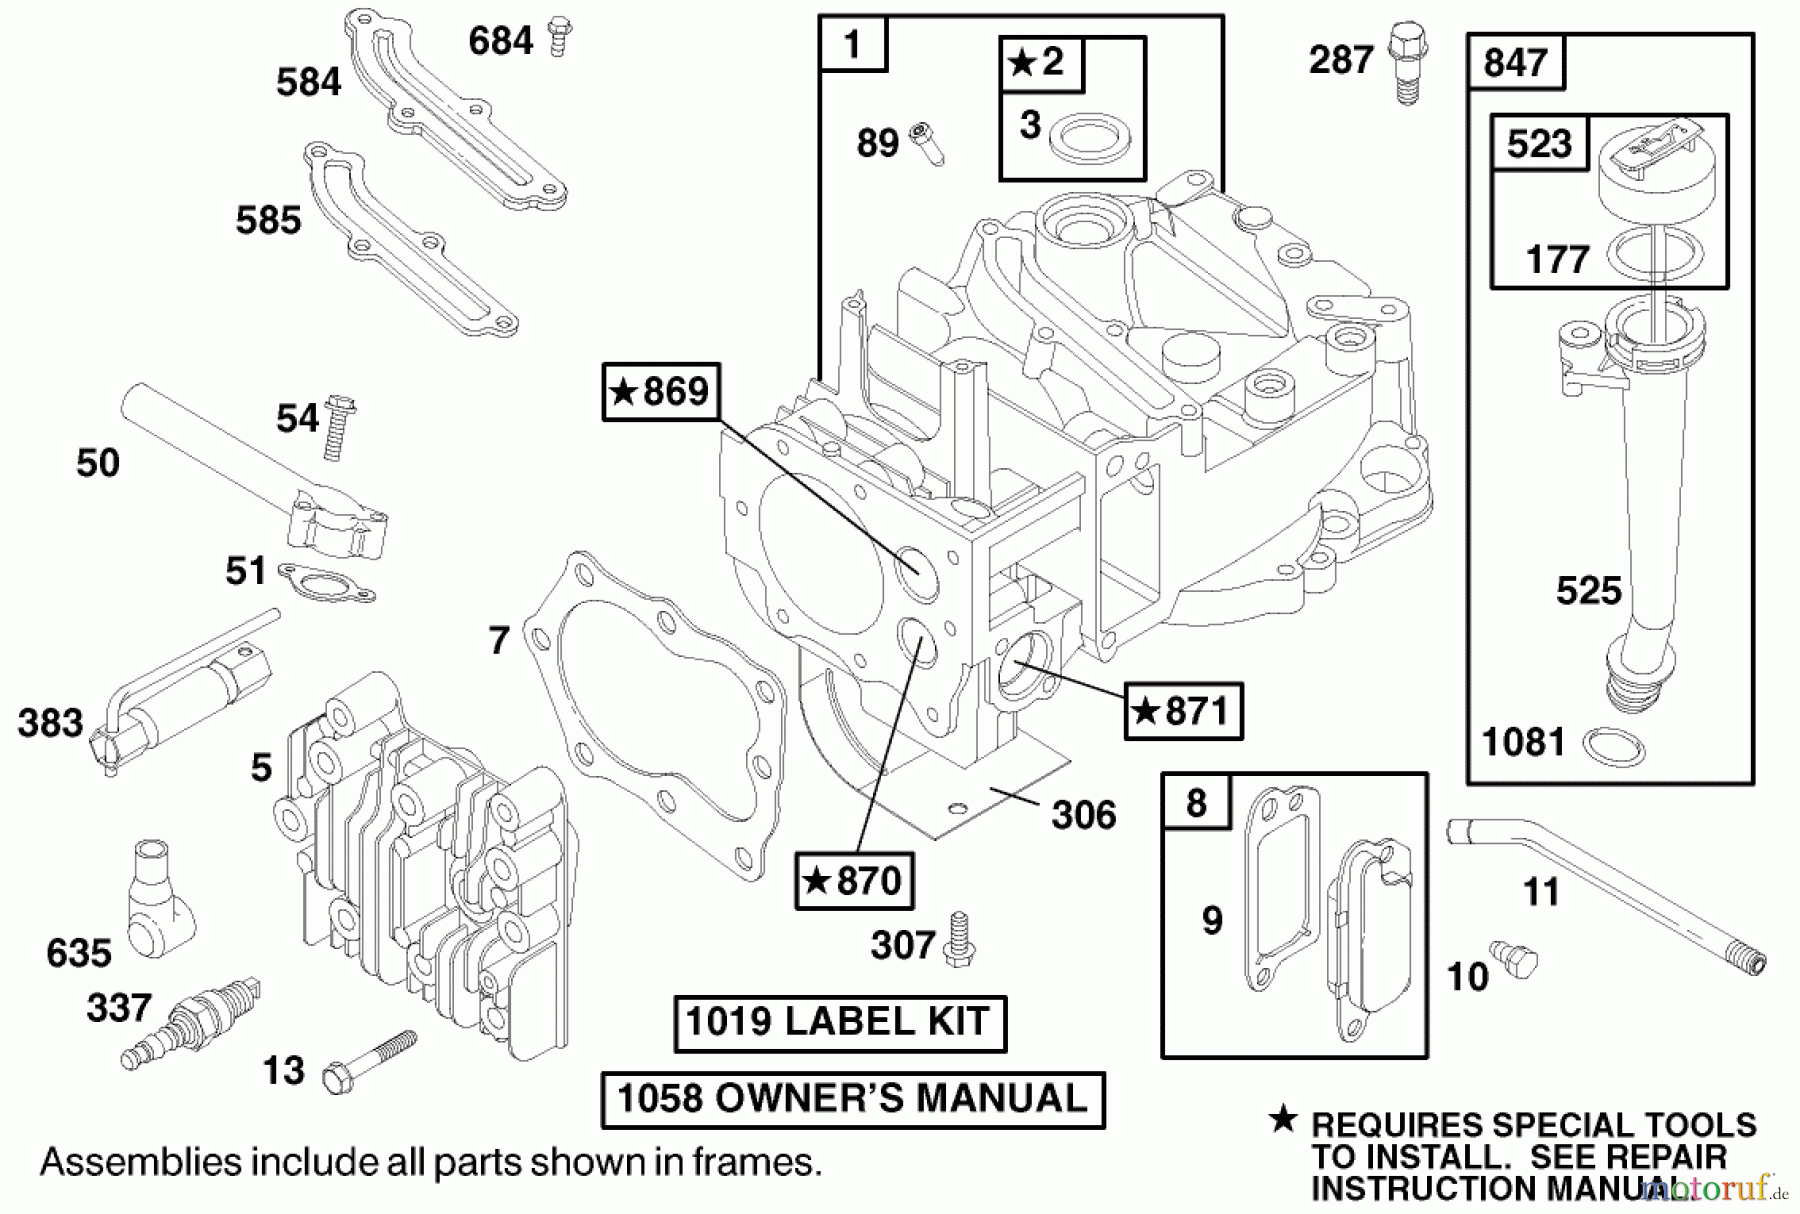  Toro Neu Mowers, Walk-Behind Seite 1 20028 - Toro Recycler Mower, 1999 (9900001-9999999) ENGINE BRIGGS & STRATTON MODEL 12J802-2368-E1 #1